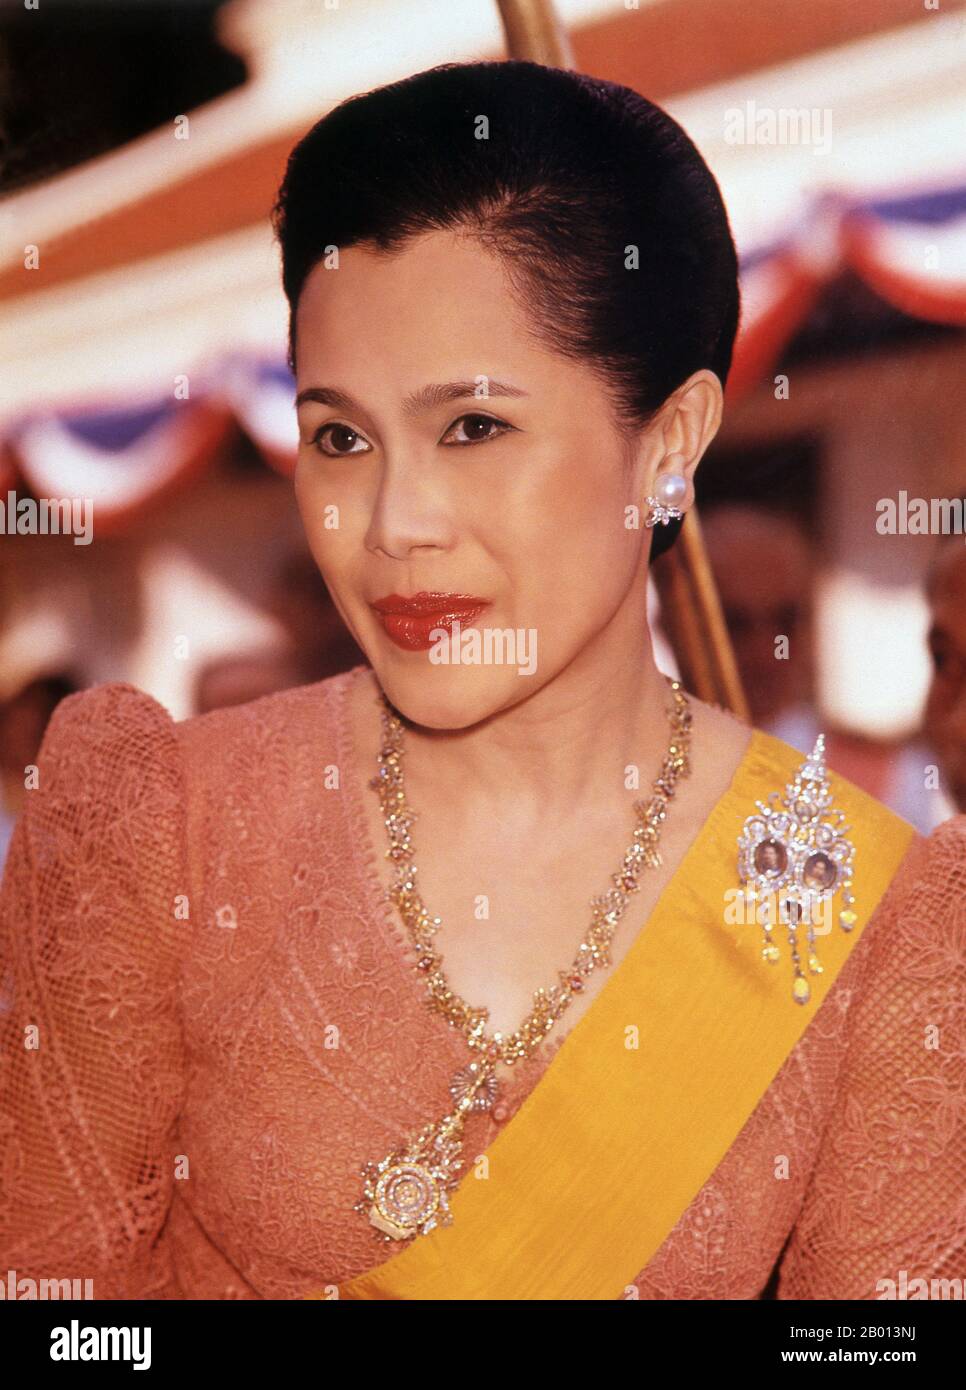 Thaïlande: Reine Sirikit (12 août 1932 - ), consort de Bhumibol Adulyadej (Rama IX), Roi de Thaïlande, c. années 1970. Somdet Phra Nang Chao Sirikit Phra Borommarachininat, né Mum Rajawongse Sirikit Kitiyakara le 12 août 1932), est la reine consort de Bhumibol Adulyadej, roi (Rama IX) de Thaïlande. Elle est la deuxième reine Regent de Thaïlande (la première reine Regent était la reine Saovabha Bongsri de Siam, plus tard la reine Sri Patcharindra, la reine mère). Elle a subi un accident vasculaire cérébral le 21 juillet 2012 et n'a pas été vue en public depuis. Banque D'Images